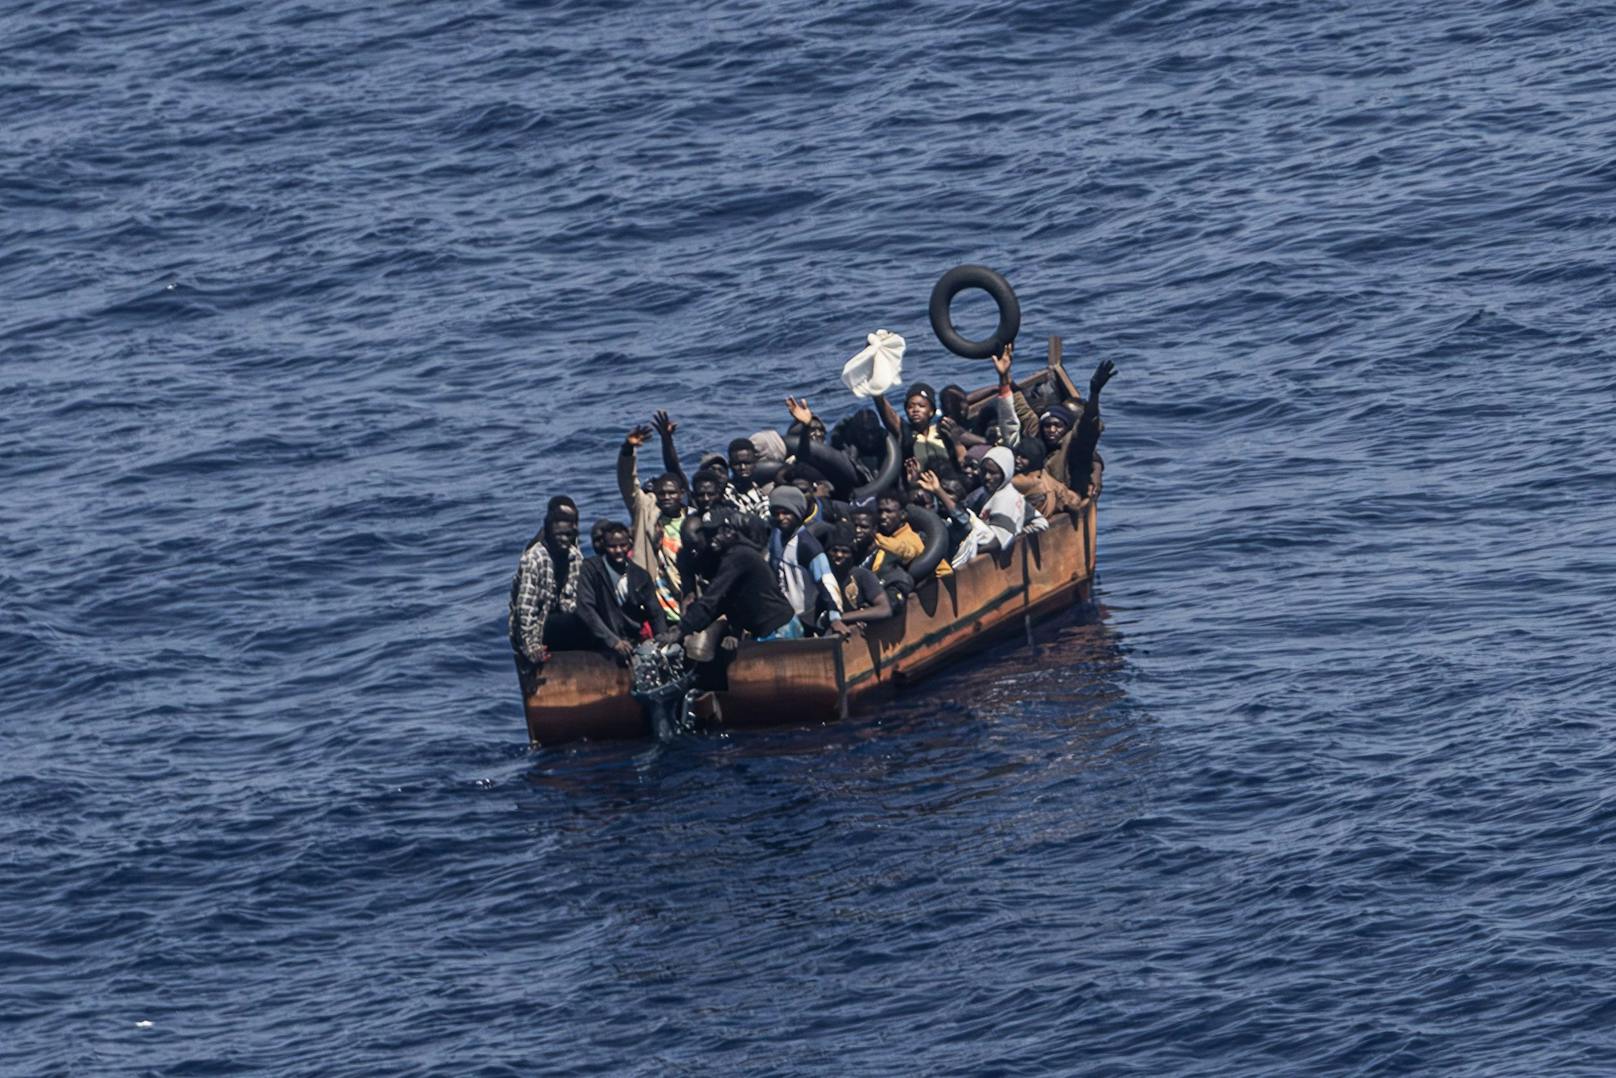 Bei einem Schiffsbruch vor Lampedusa kamen mehr als 40 Personen ums Leben. (Symbolbild)